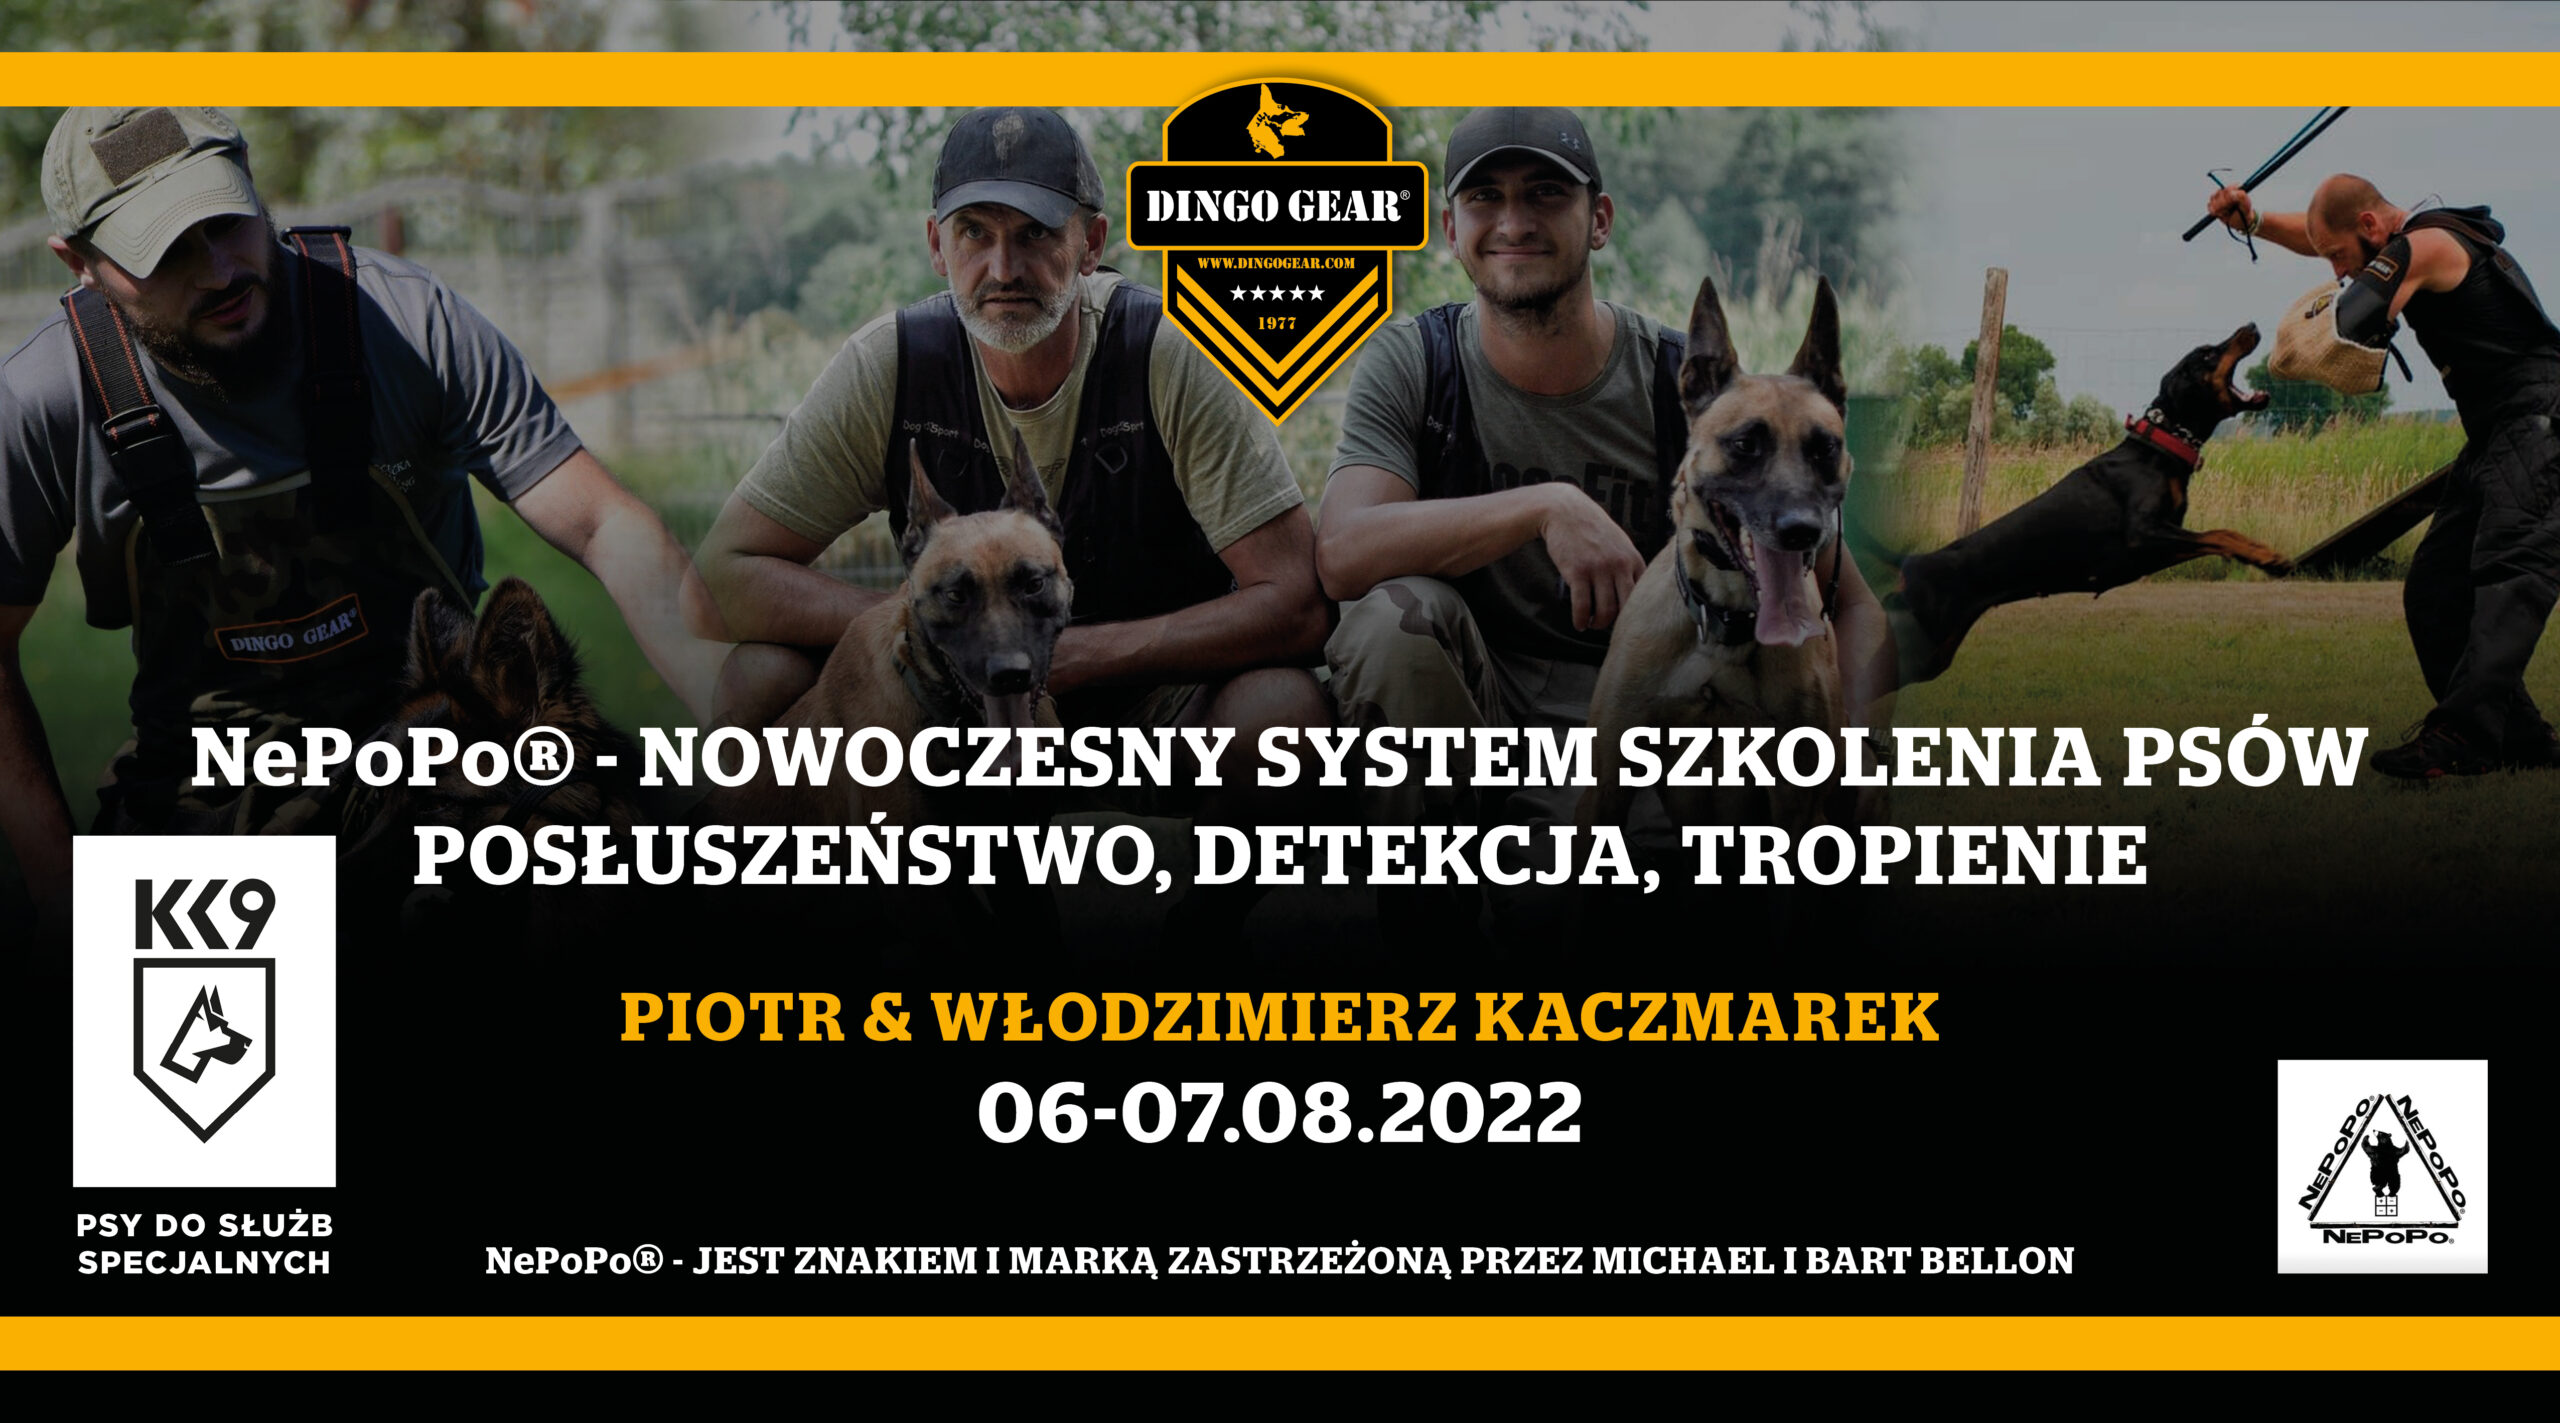 NePoPo – Seminarium Piotr & Włodzimierz Kaczmarek 06-07.08.2022. Posłuszeństwo, detekcja, tropienie